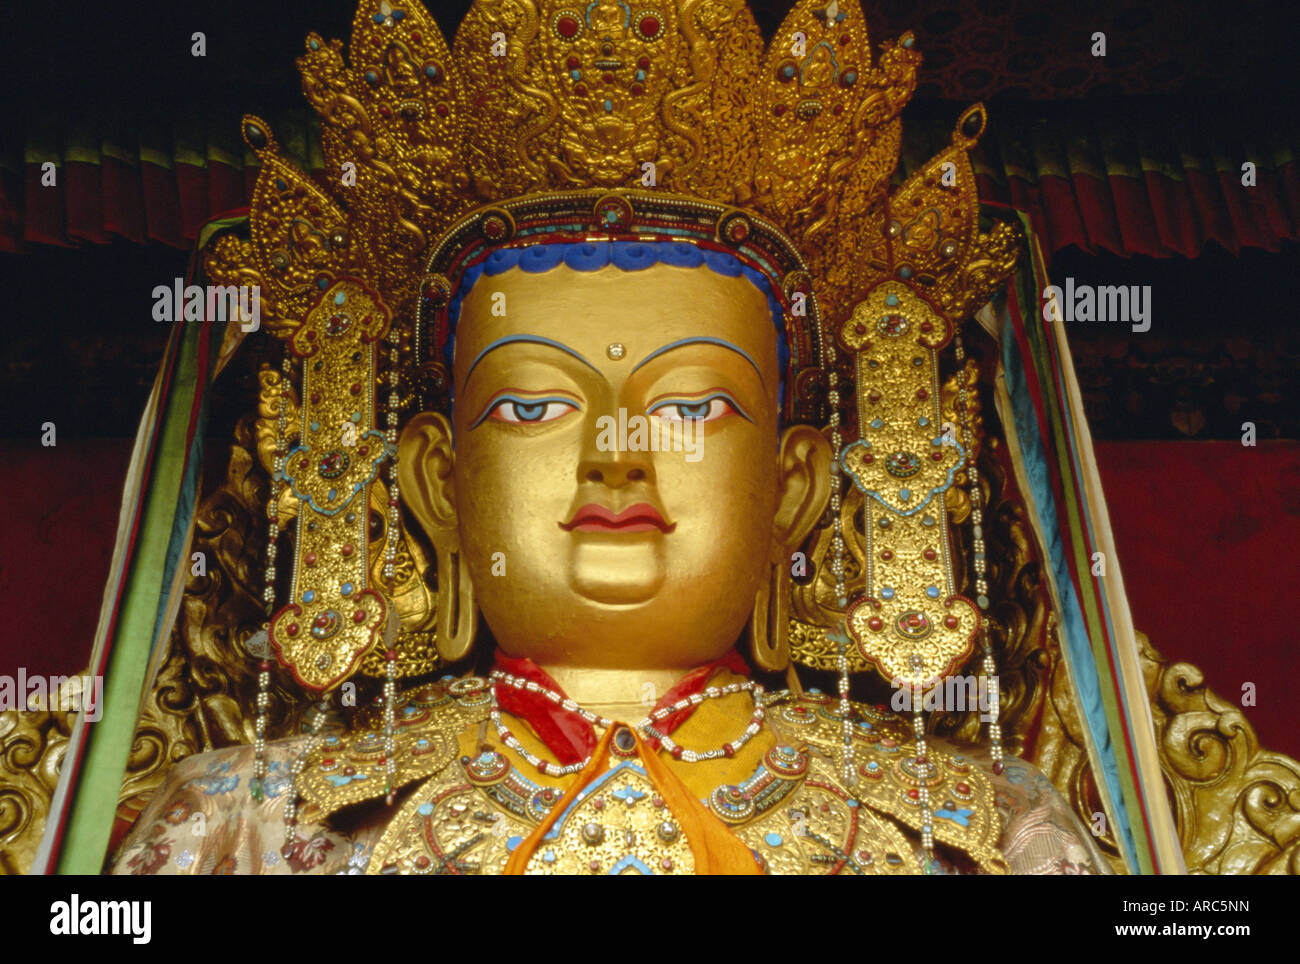 Avalokitesvara, le Bodhisattva de la compassion, Lhassa, Tibet, Chine, Asie Banque D'Images